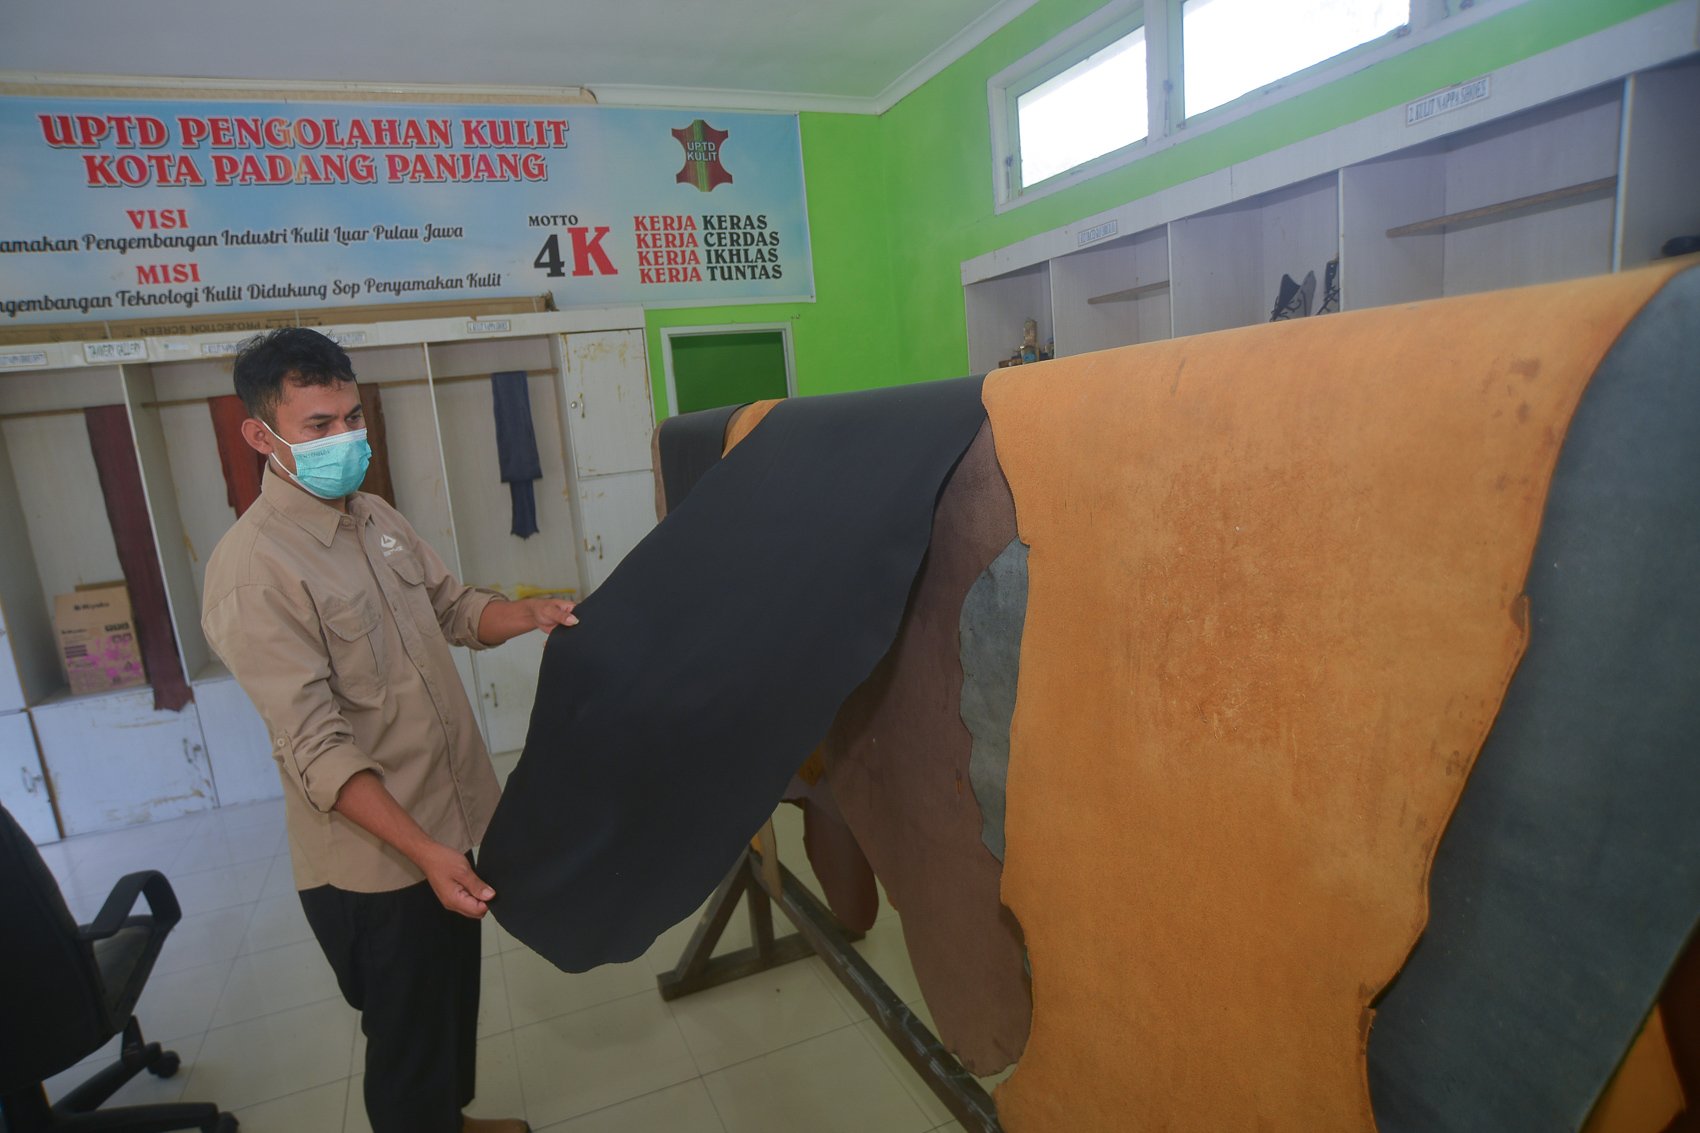 Kepala Unit Pelayanan Teknis Daerah (UPTD) Pengolahan Kulit Padang Panjang Thoriyyan Sabri menunjukan kulit yang sudah melalui proses penyamakan di Kota Padang, Sumatera Barat.